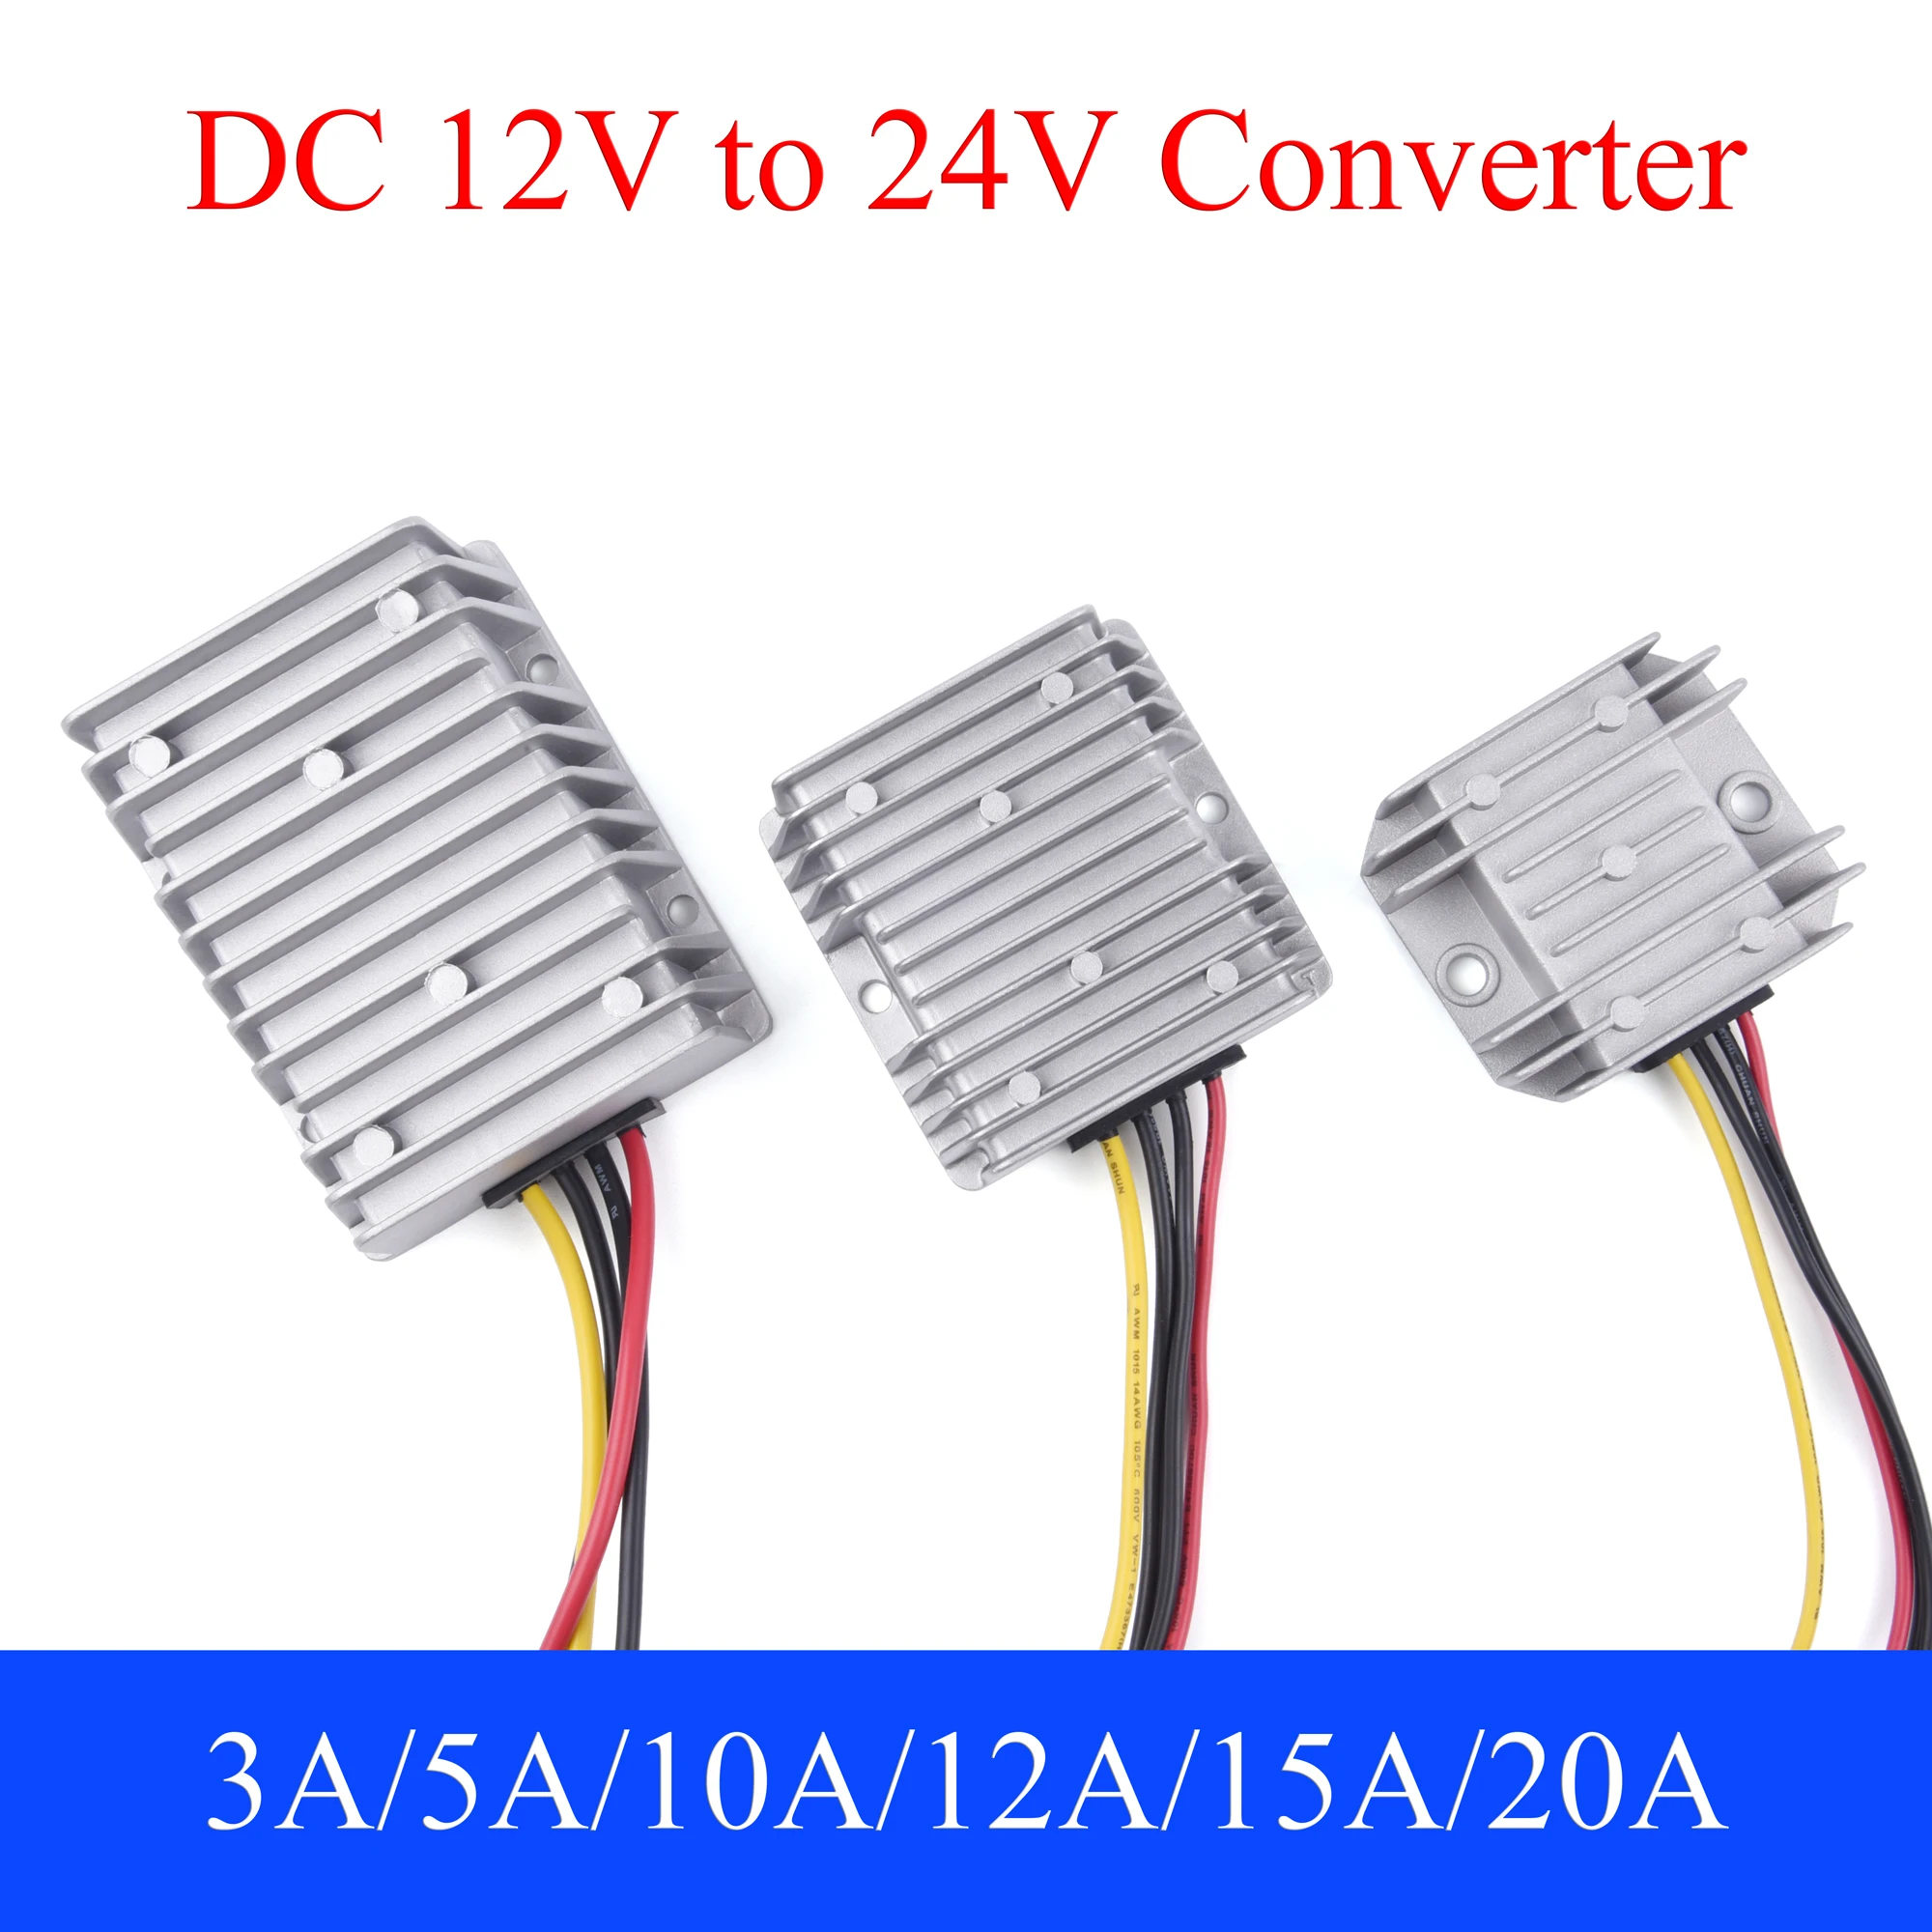 

DC 12V to 24V Power Converter 3A 5A 8A 10A 12A 15A 20A Auto Boost Regulator Step-Up Voltage Supply Module For Car